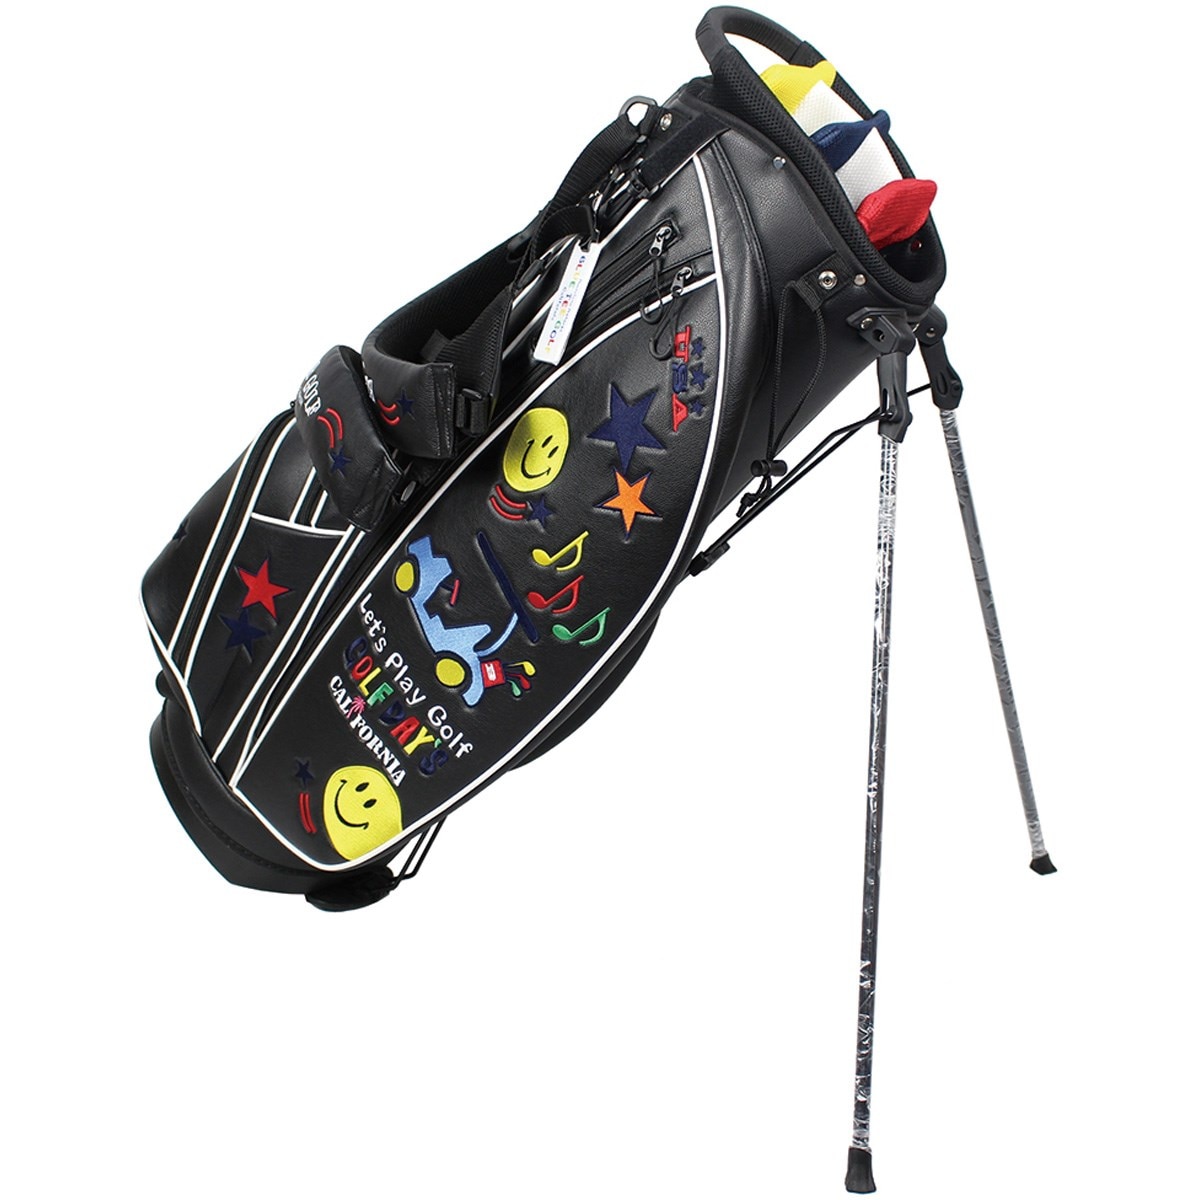 ラウンドバッグ ゴルフ 黒 軽量 レディース メンズ バッグ 収納 ゴルフ用品 - 4